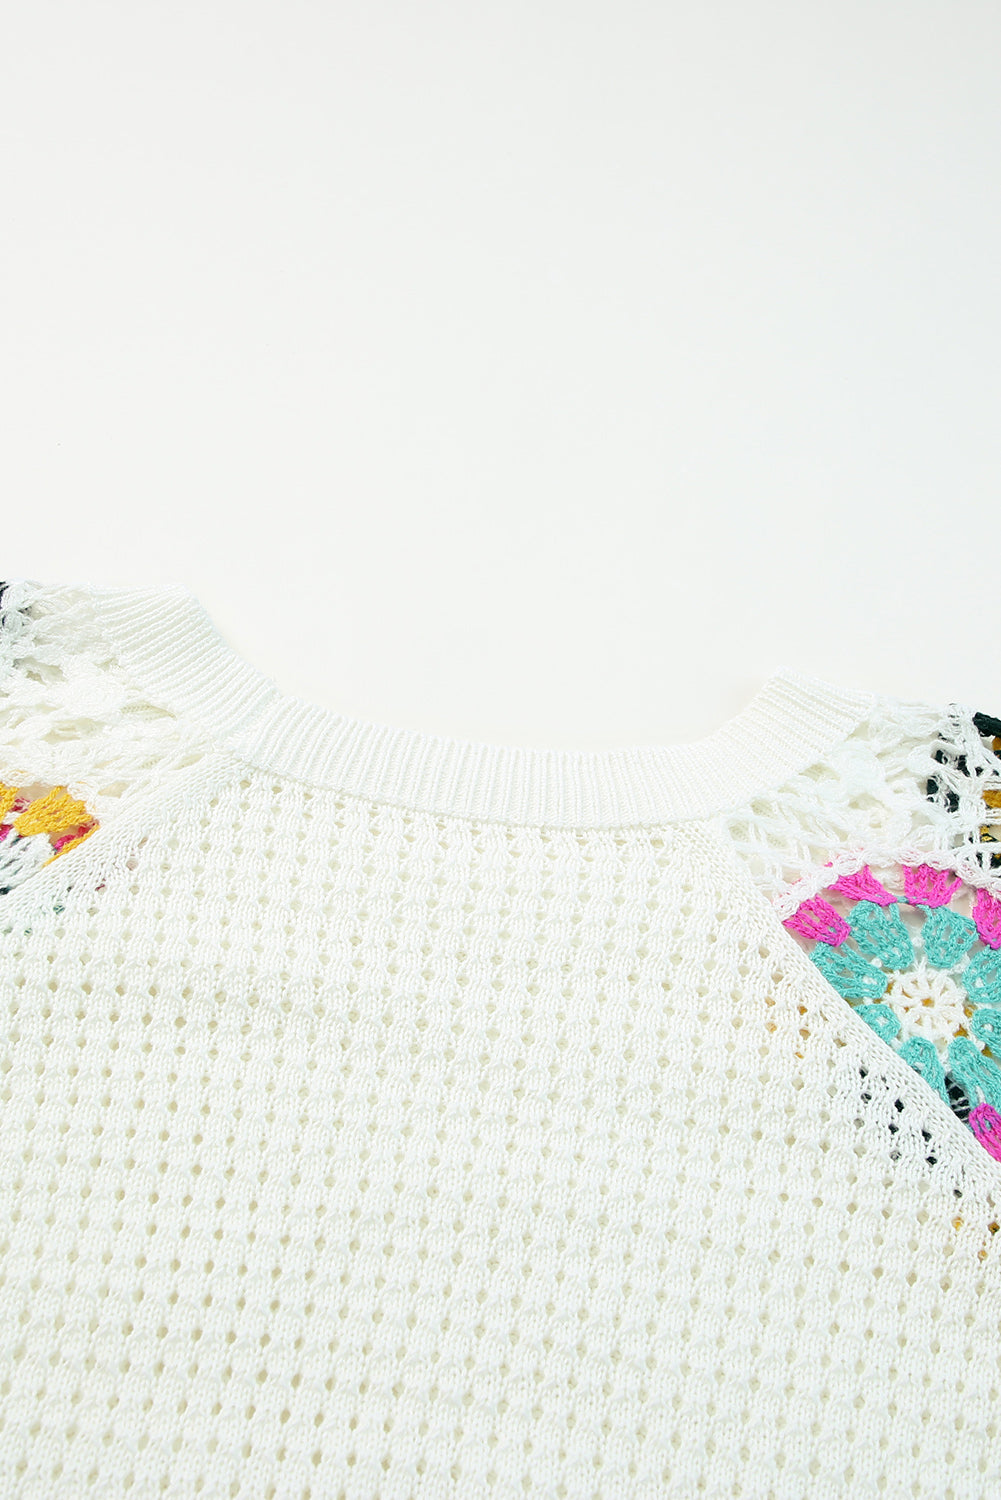 Bel pulover s kvačkanimi rokavi s cvetličnimi motivi